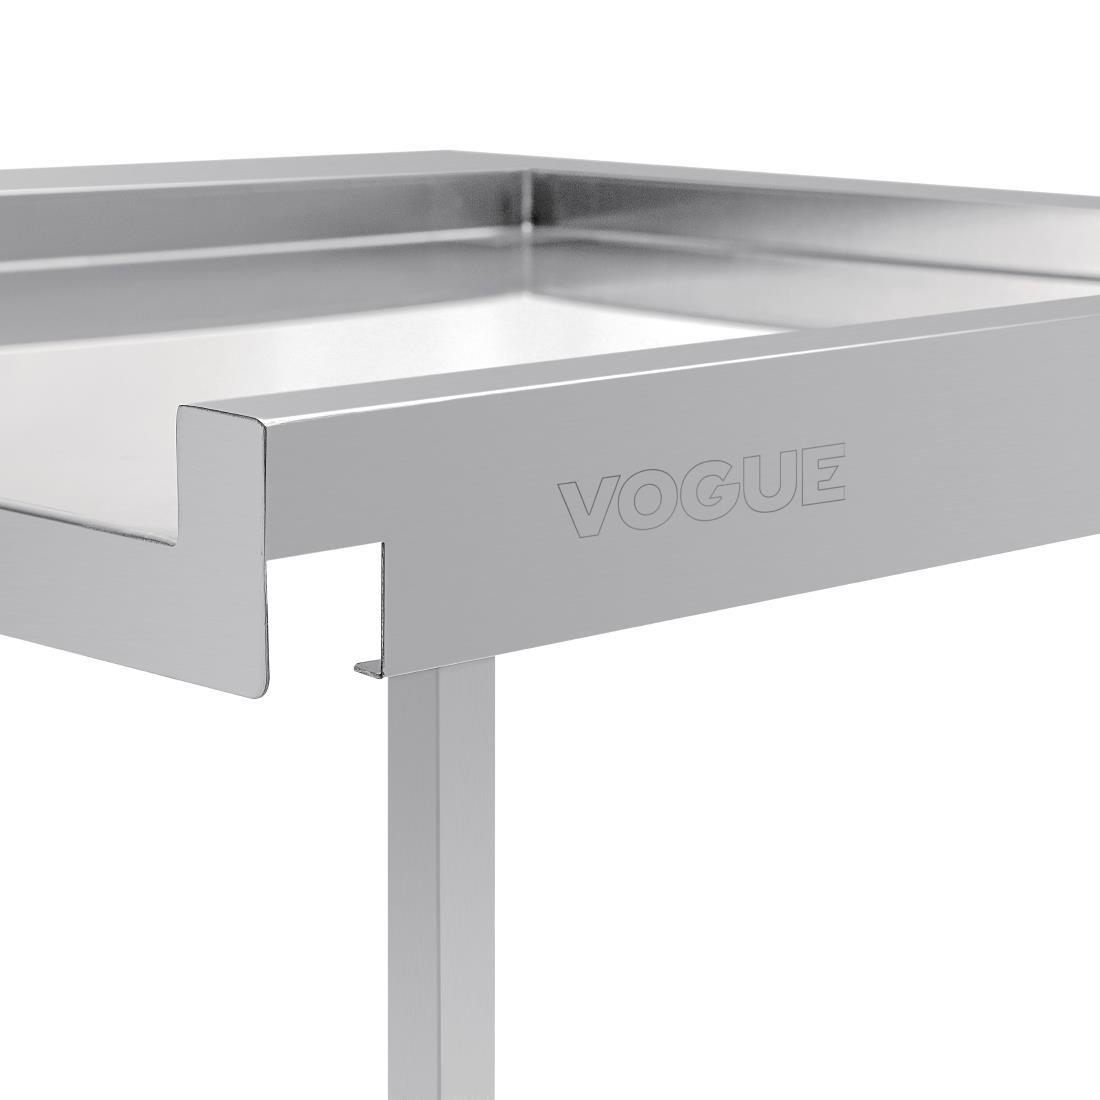 Vogue Pass Through Dishwash Table Left 600mm - GJ533  - 2